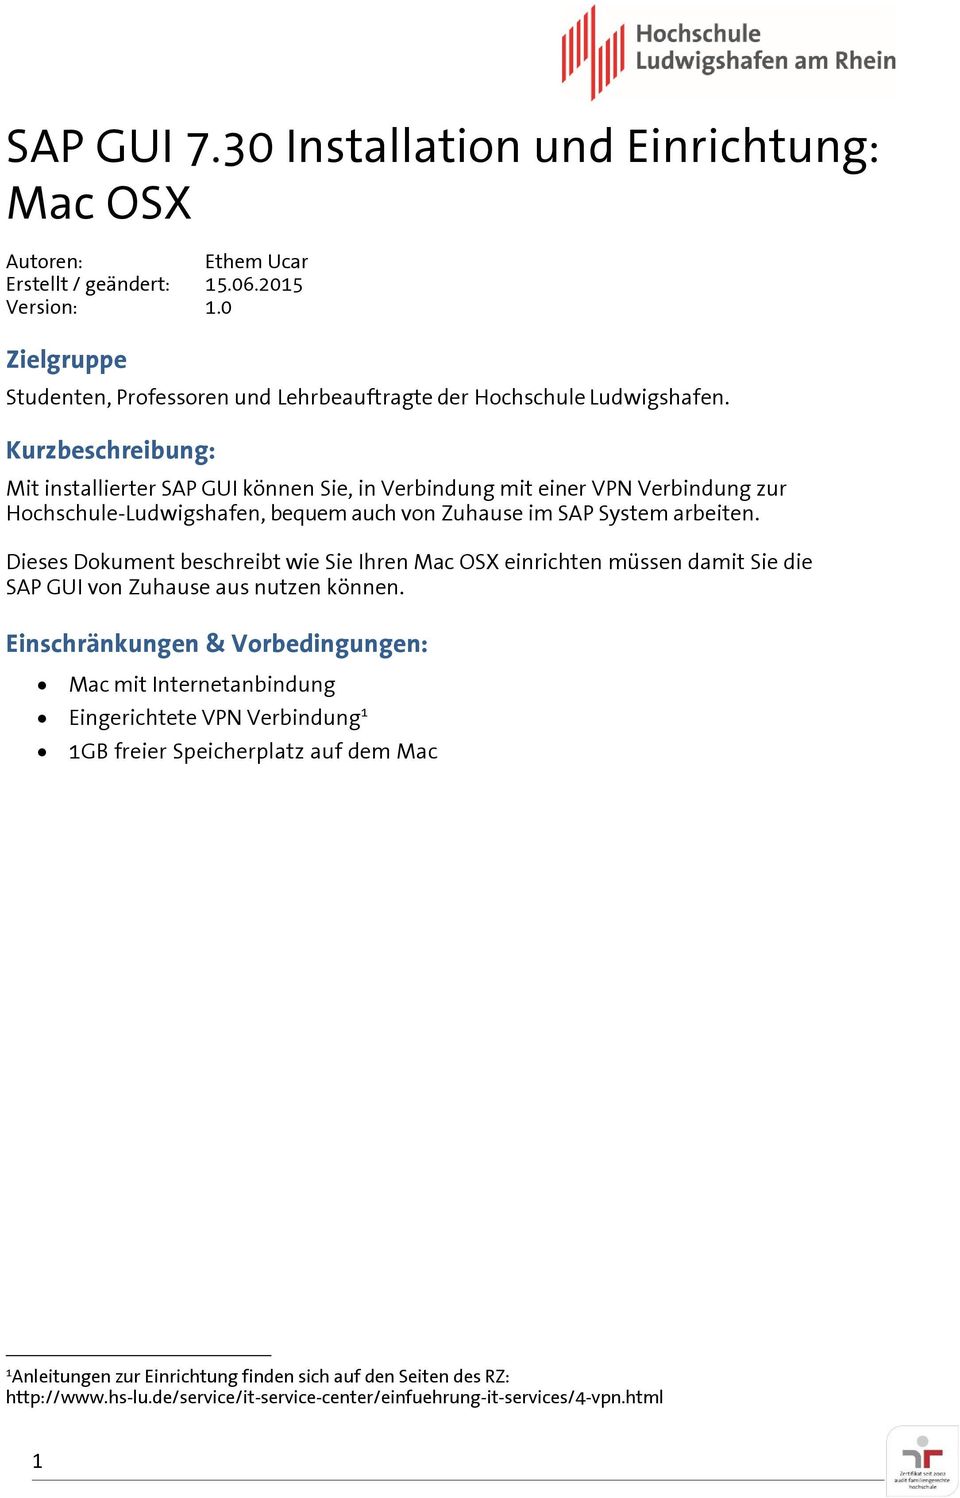 Kurzbeschreibung: Mit installierter SAP GUI können Sie, in Verbindung mit einer VPN Verbindung zur Hochschule-Ludwigshafen, bequem auch von Zuhause im SAP System arbeiten.